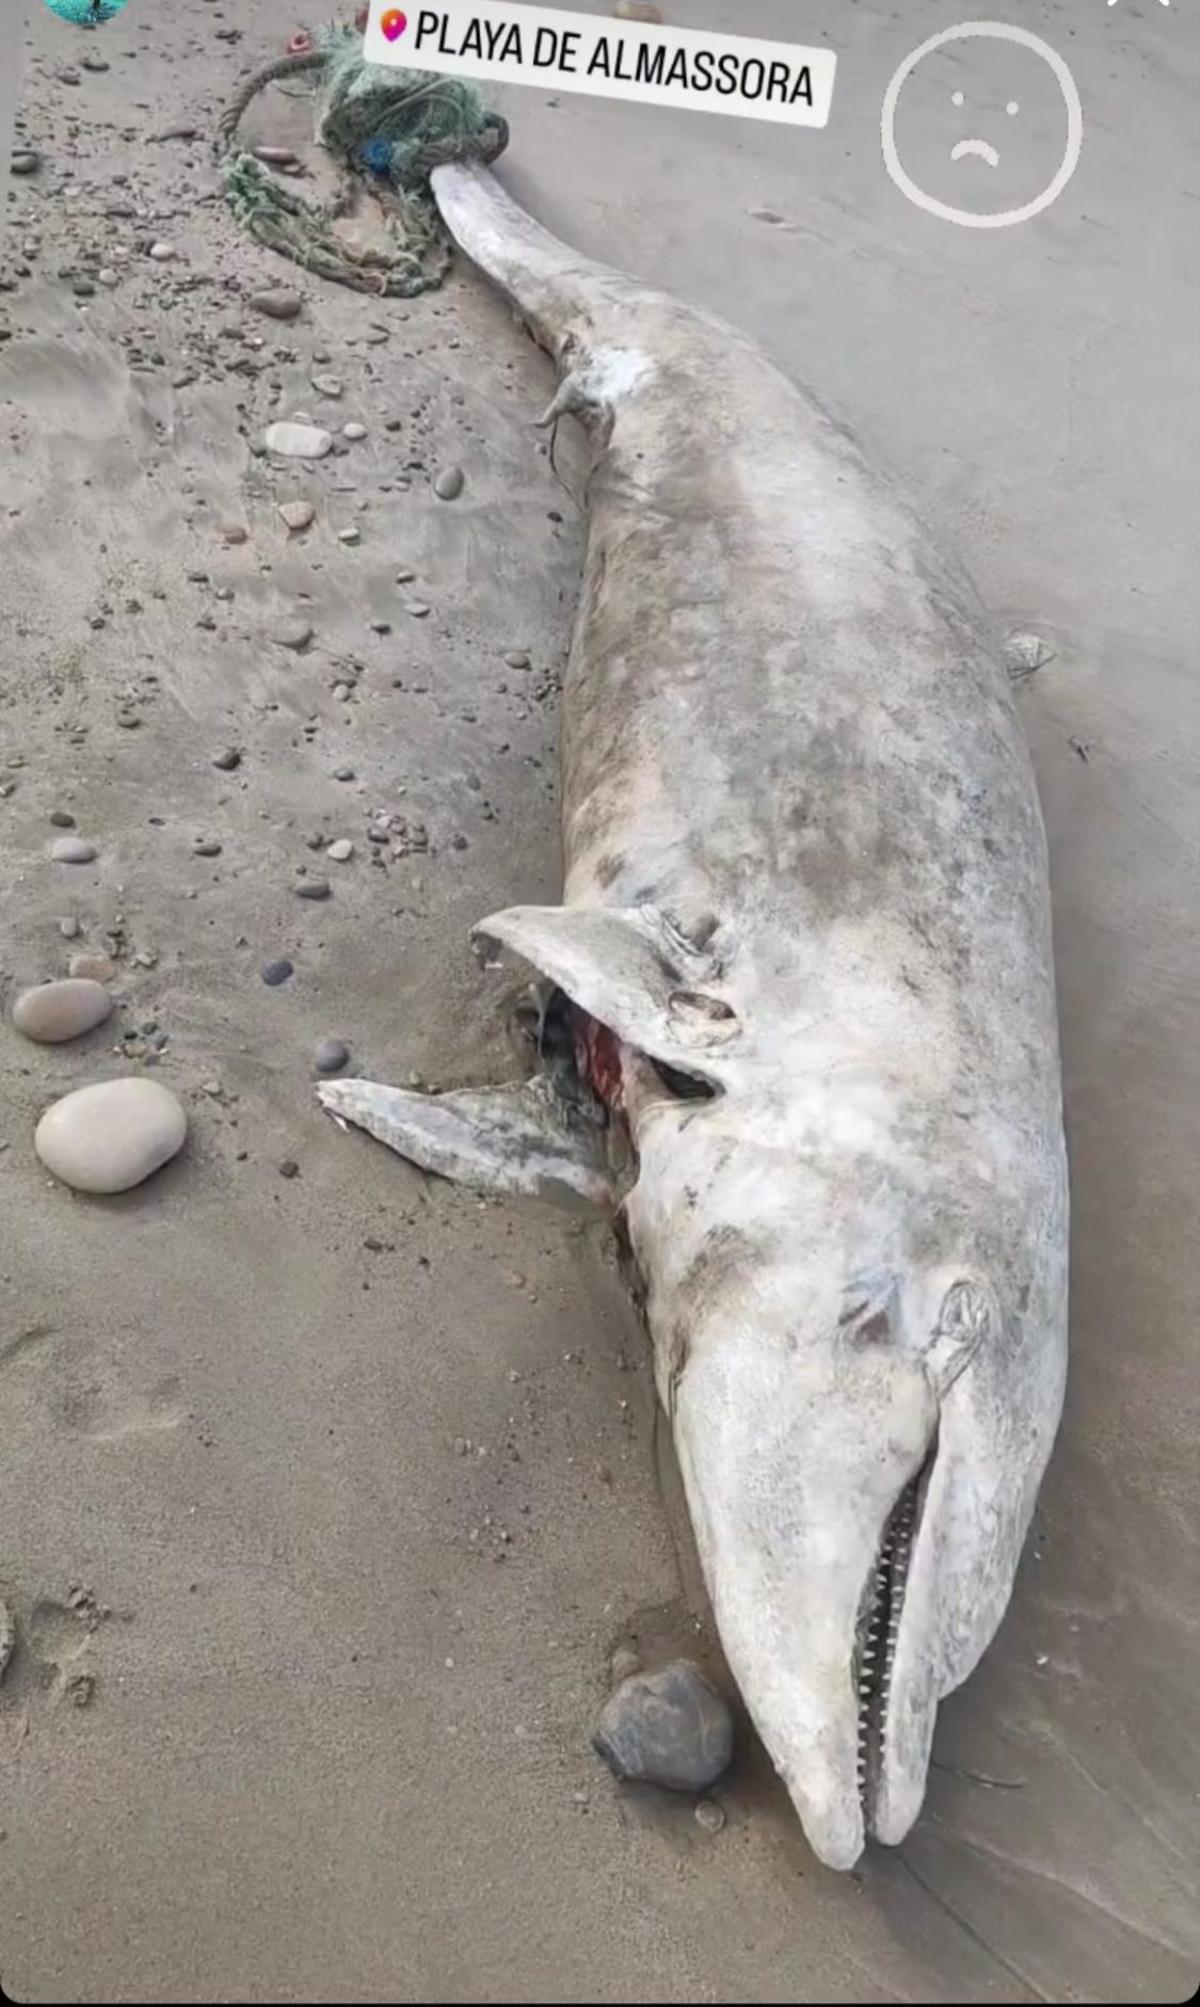 Imagen del delfín hallado sin vida en Almassora